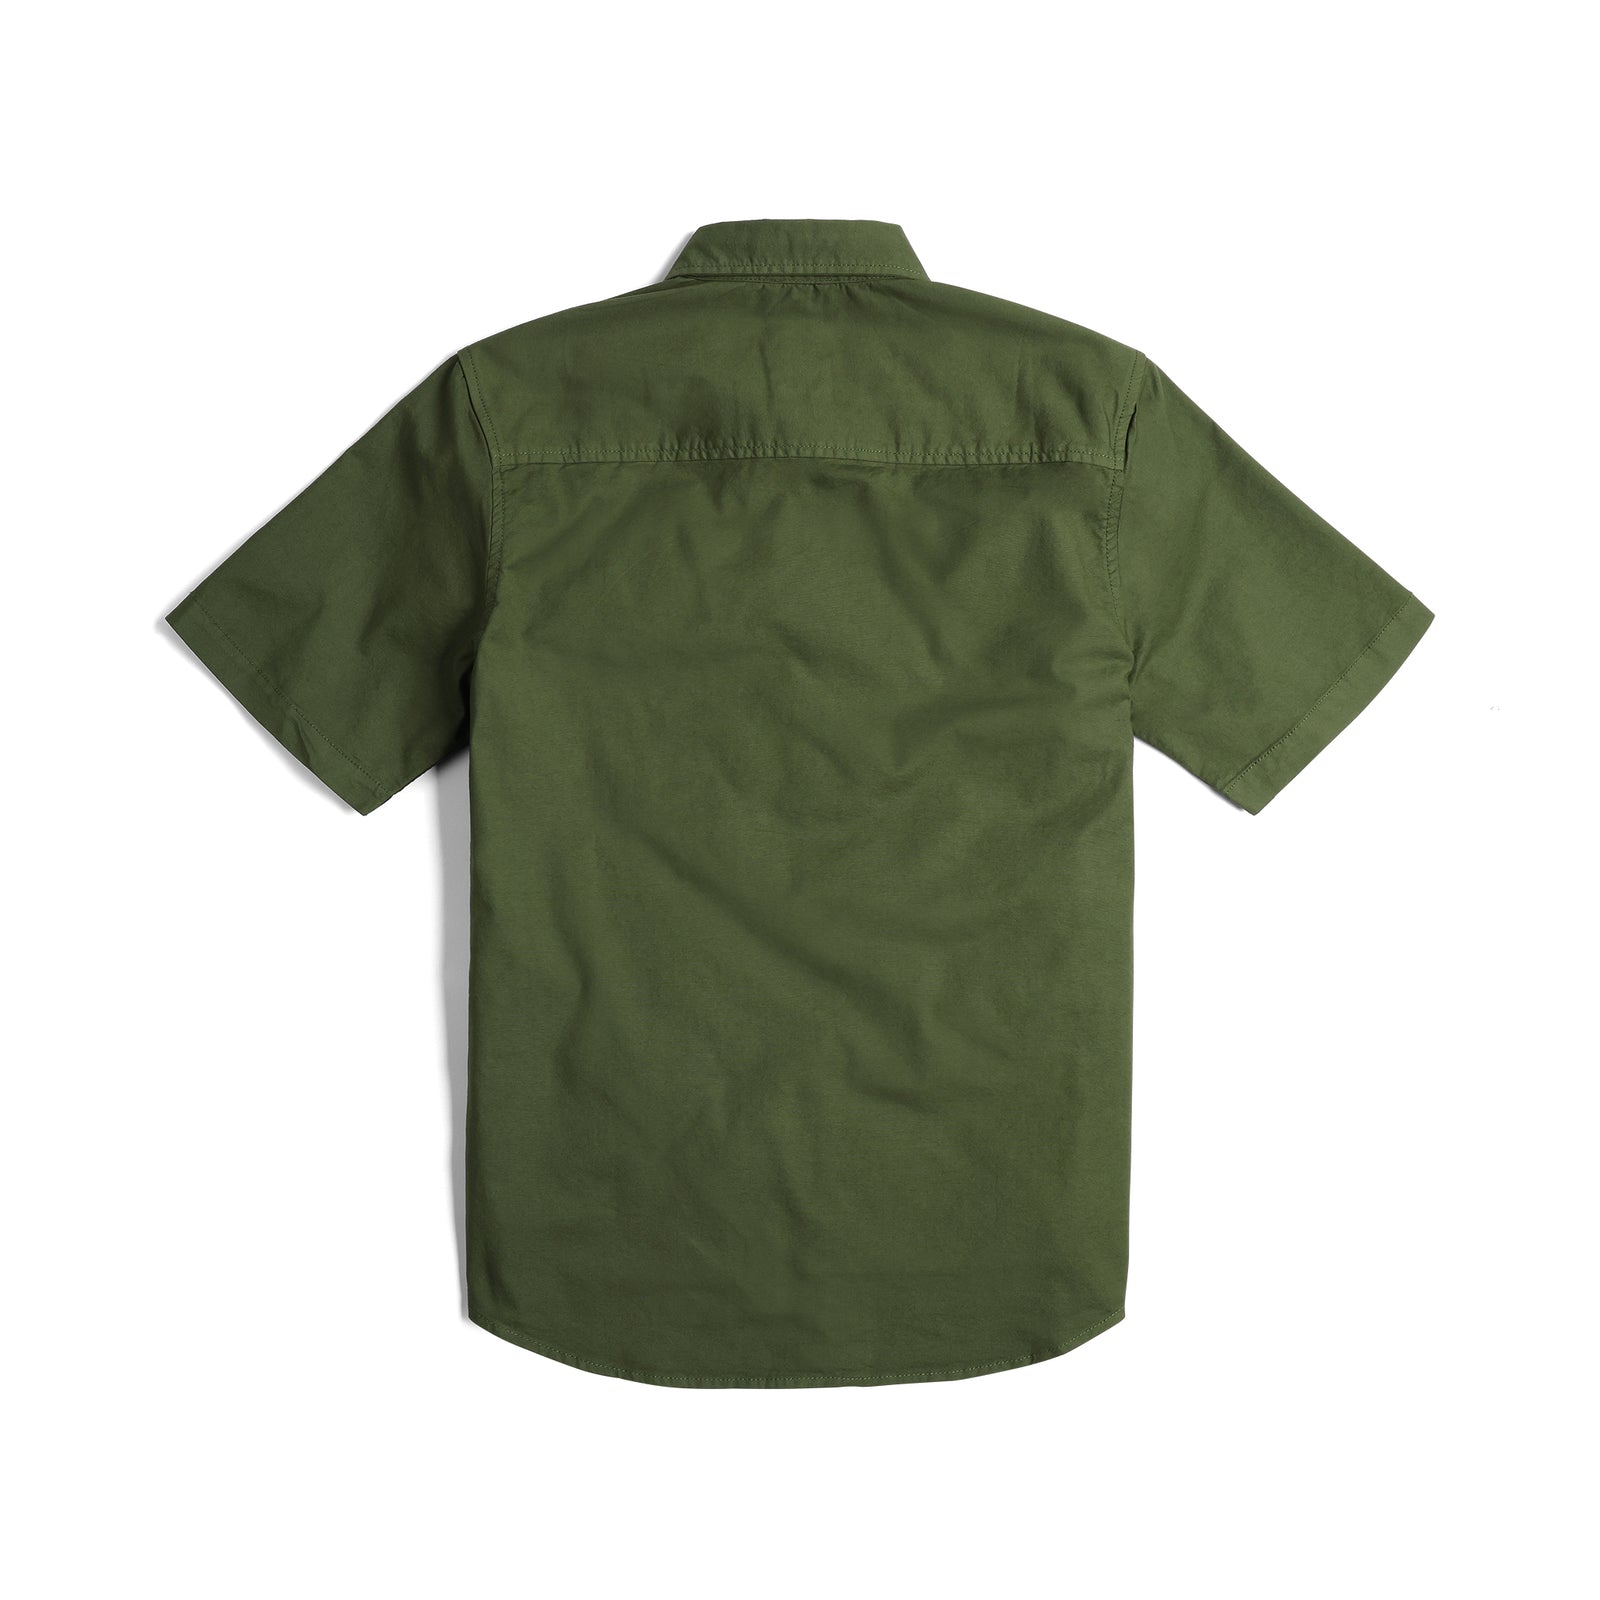 Back View of Topo Designs Dirt Desert Shirt Ss - Men's in "Olive"